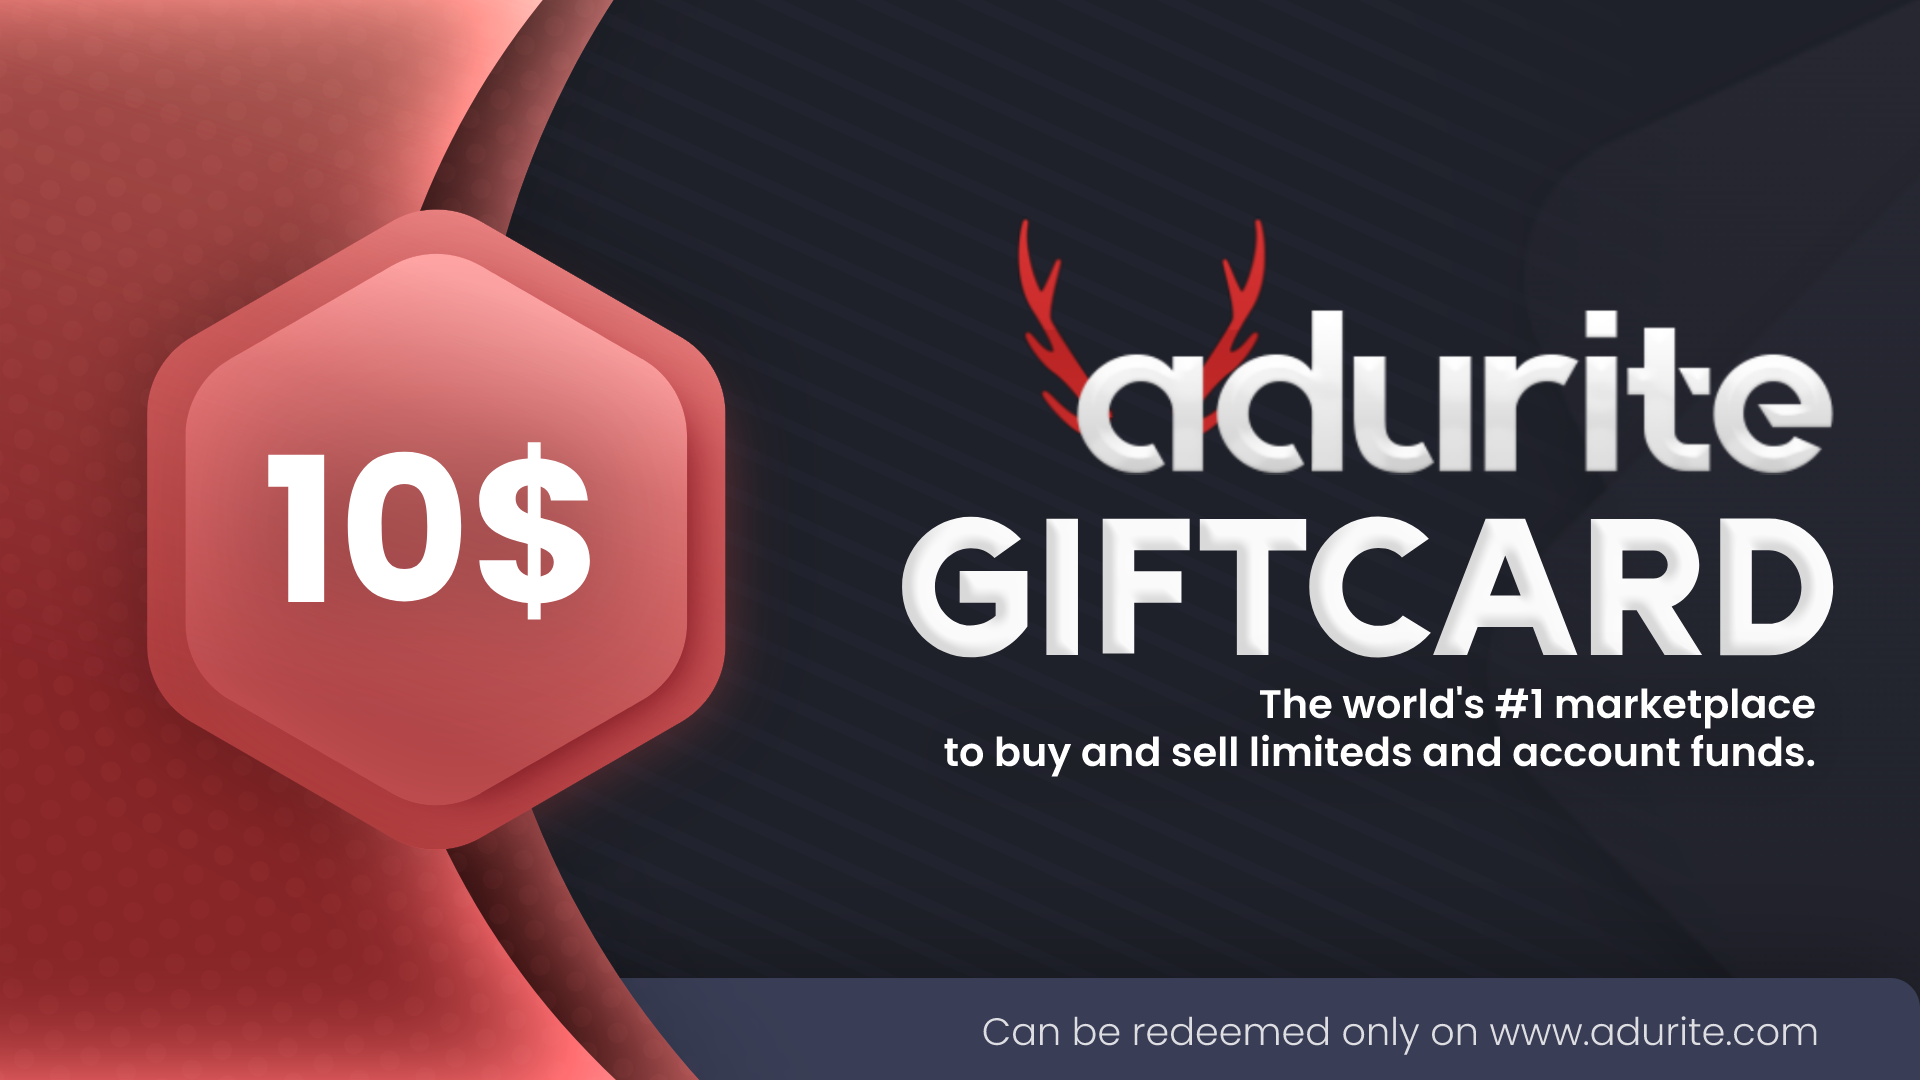 Adurite.com $10 Gift Card $14.25